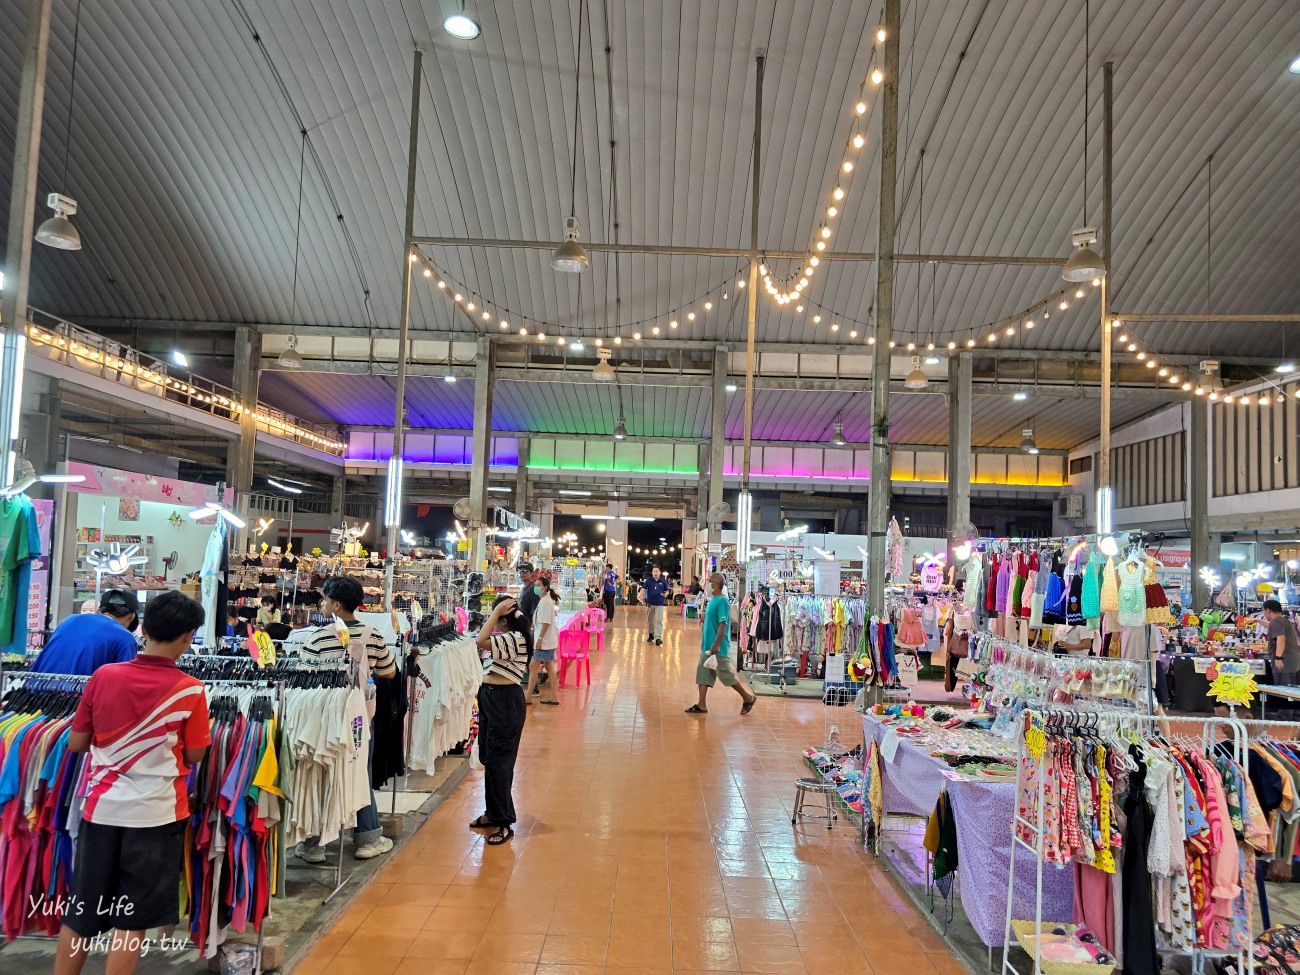 曼谷新夜市【Save One GO Market】東西便宜10泰銖超好買(交通.營業資訊) - yukiblog.tw